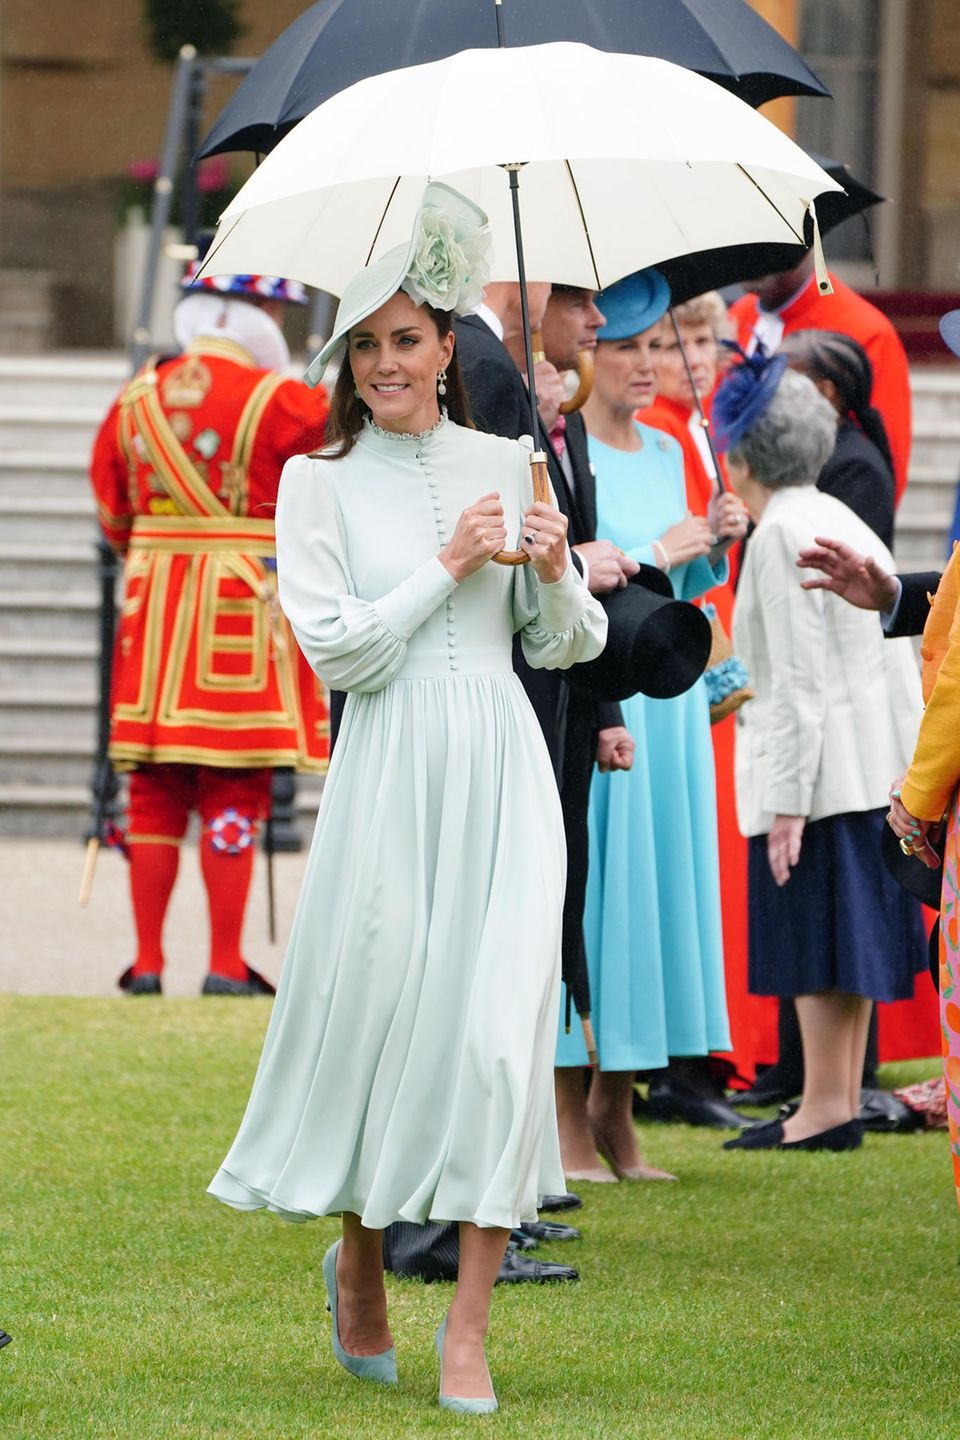 Es ist wieder Gartenparty Saison. Zur dritten Party im Buckingham Palast trägt Herzogin Catherine ein hochgeschlossenes Midi-Kleid mit Knopfleiste und Puffärmeln. Mit dem mintfarbenen Dress, hat Kate bereits in der Vergangenheit schon punkten können. Diesmal kombiniert sie einen farblich passenden Hut und Regenschirm dazu – wie ein Vollprofi! 